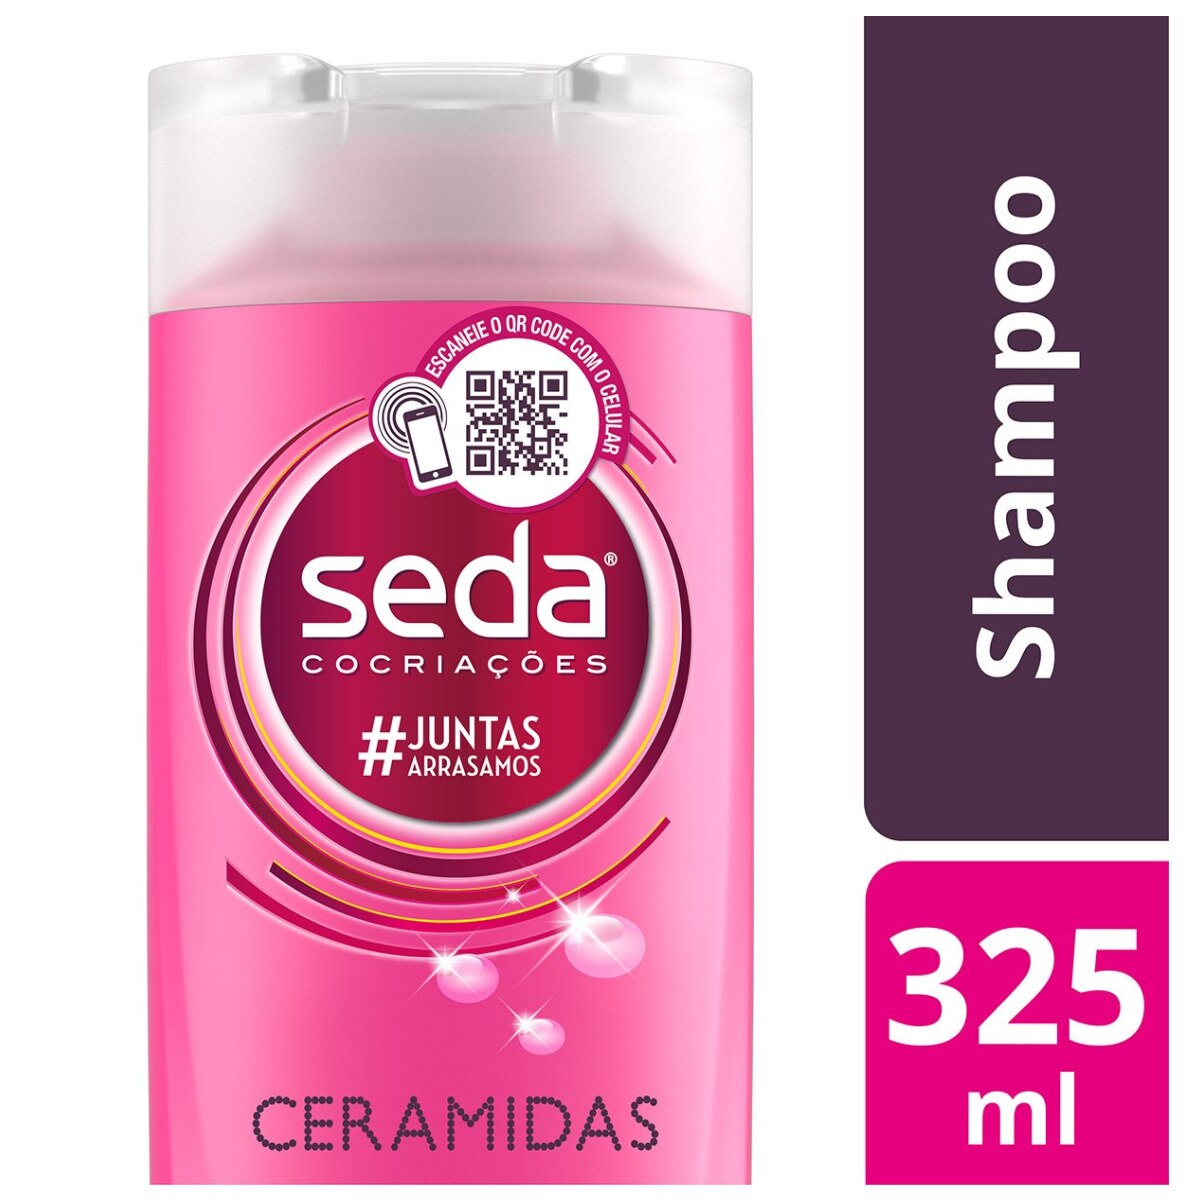 Shampoo Seda Cocriacoes Ceramidas 325ml